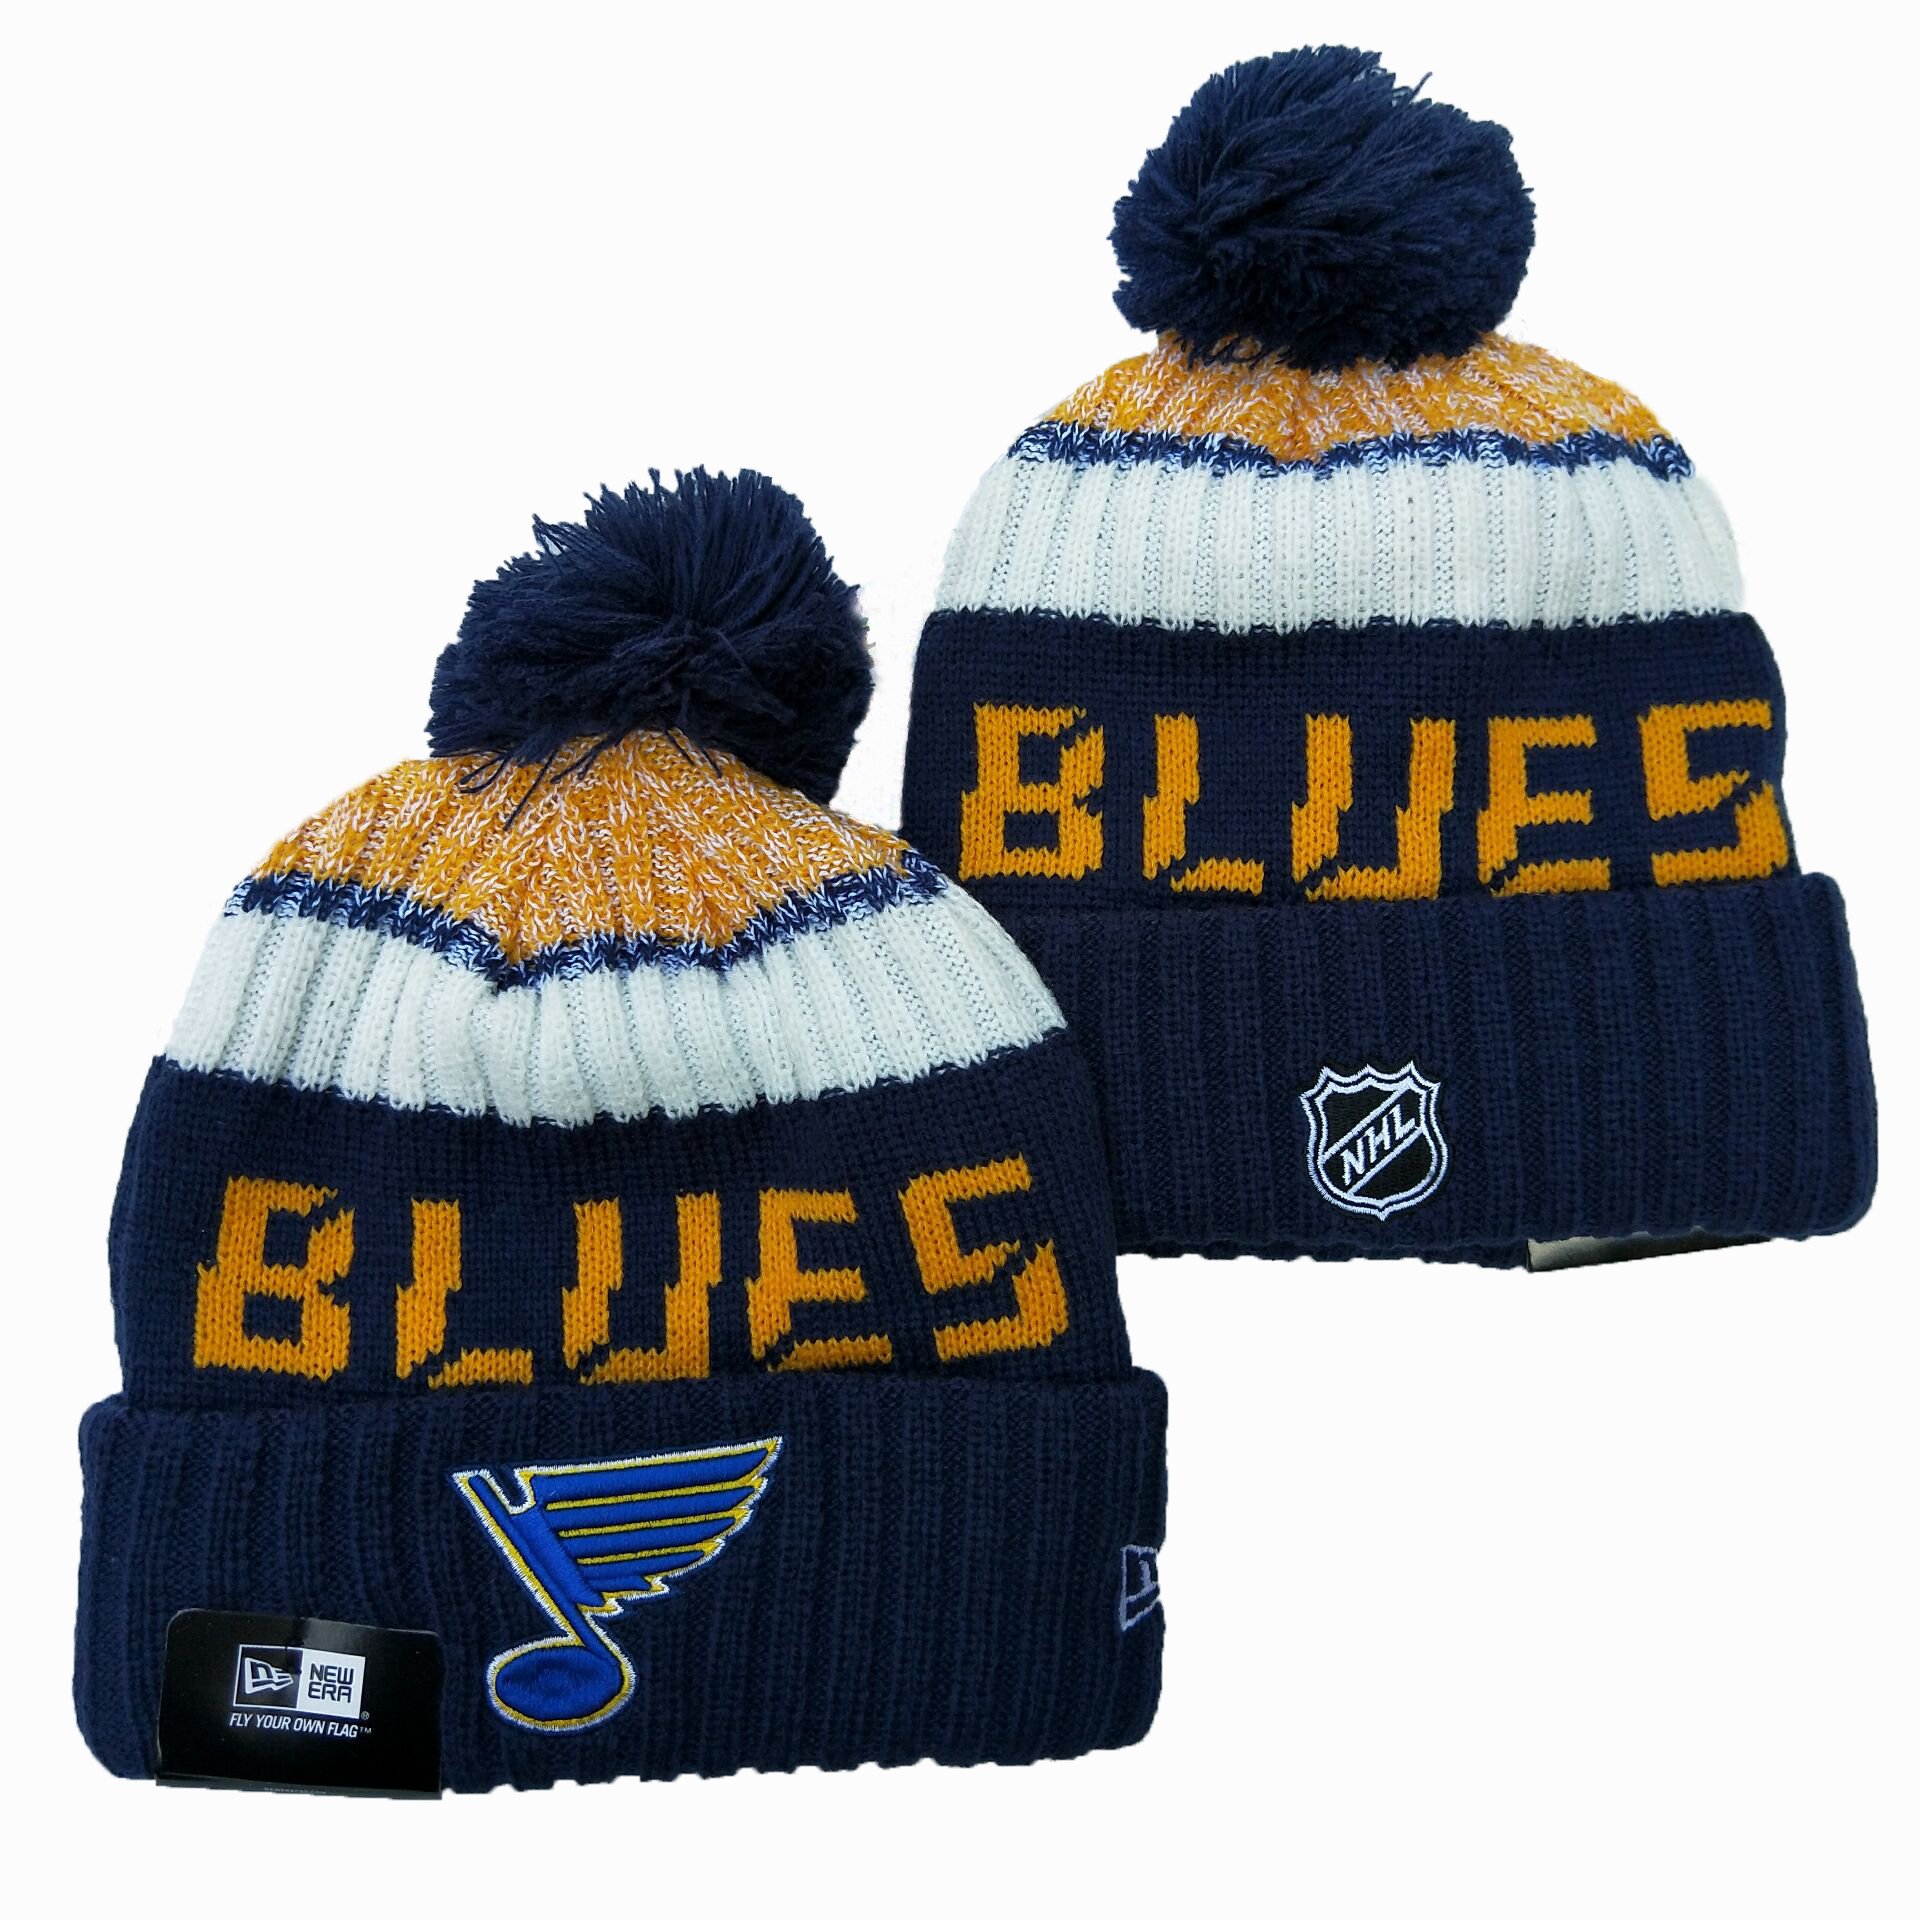 St. Louis Blues Knit Hats 004